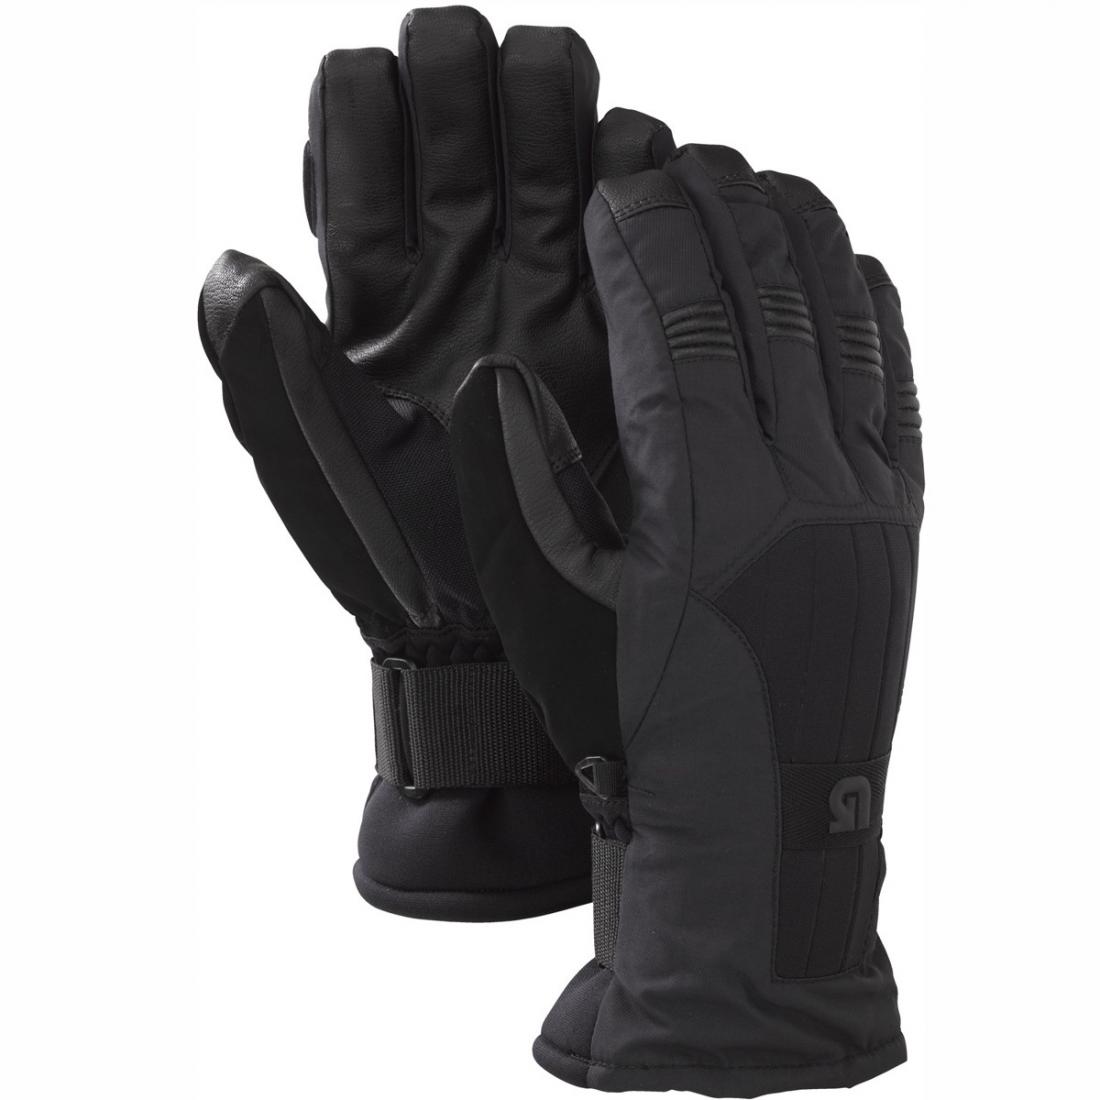 Перчатки Burton Support Glove